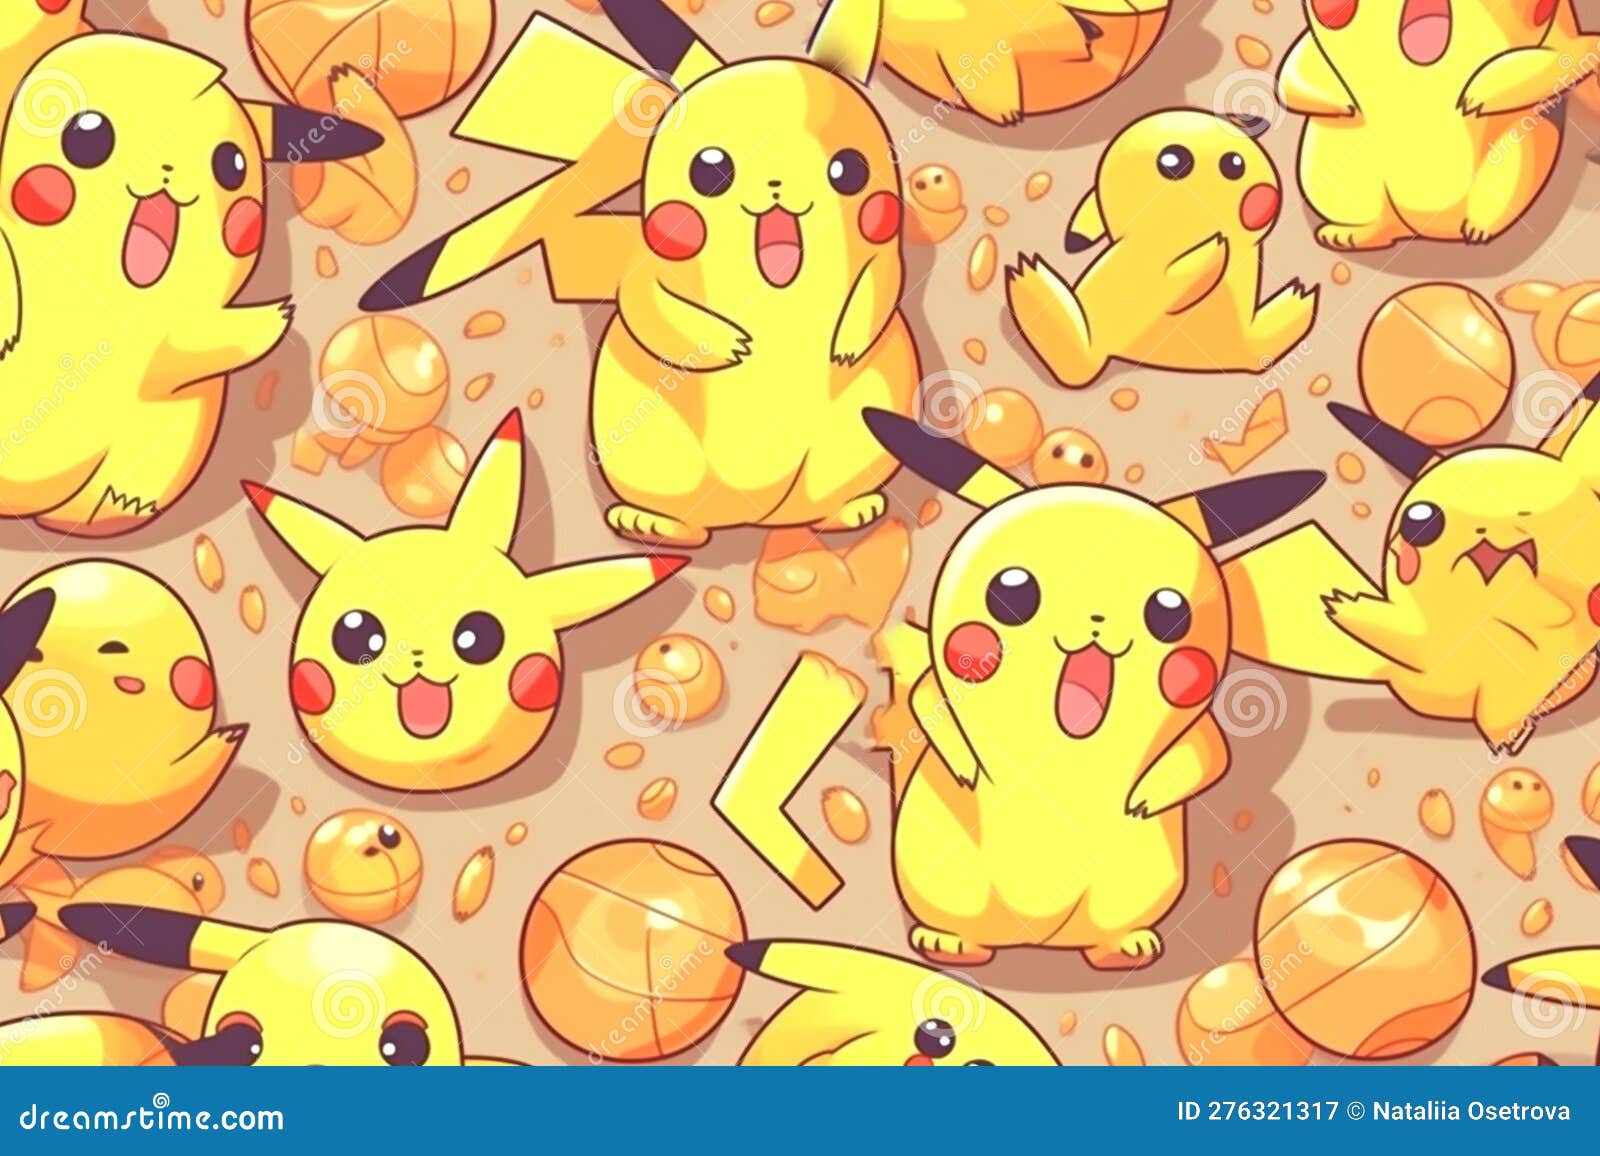 Pokemon, Pikachu wallpaper, Wallpaper